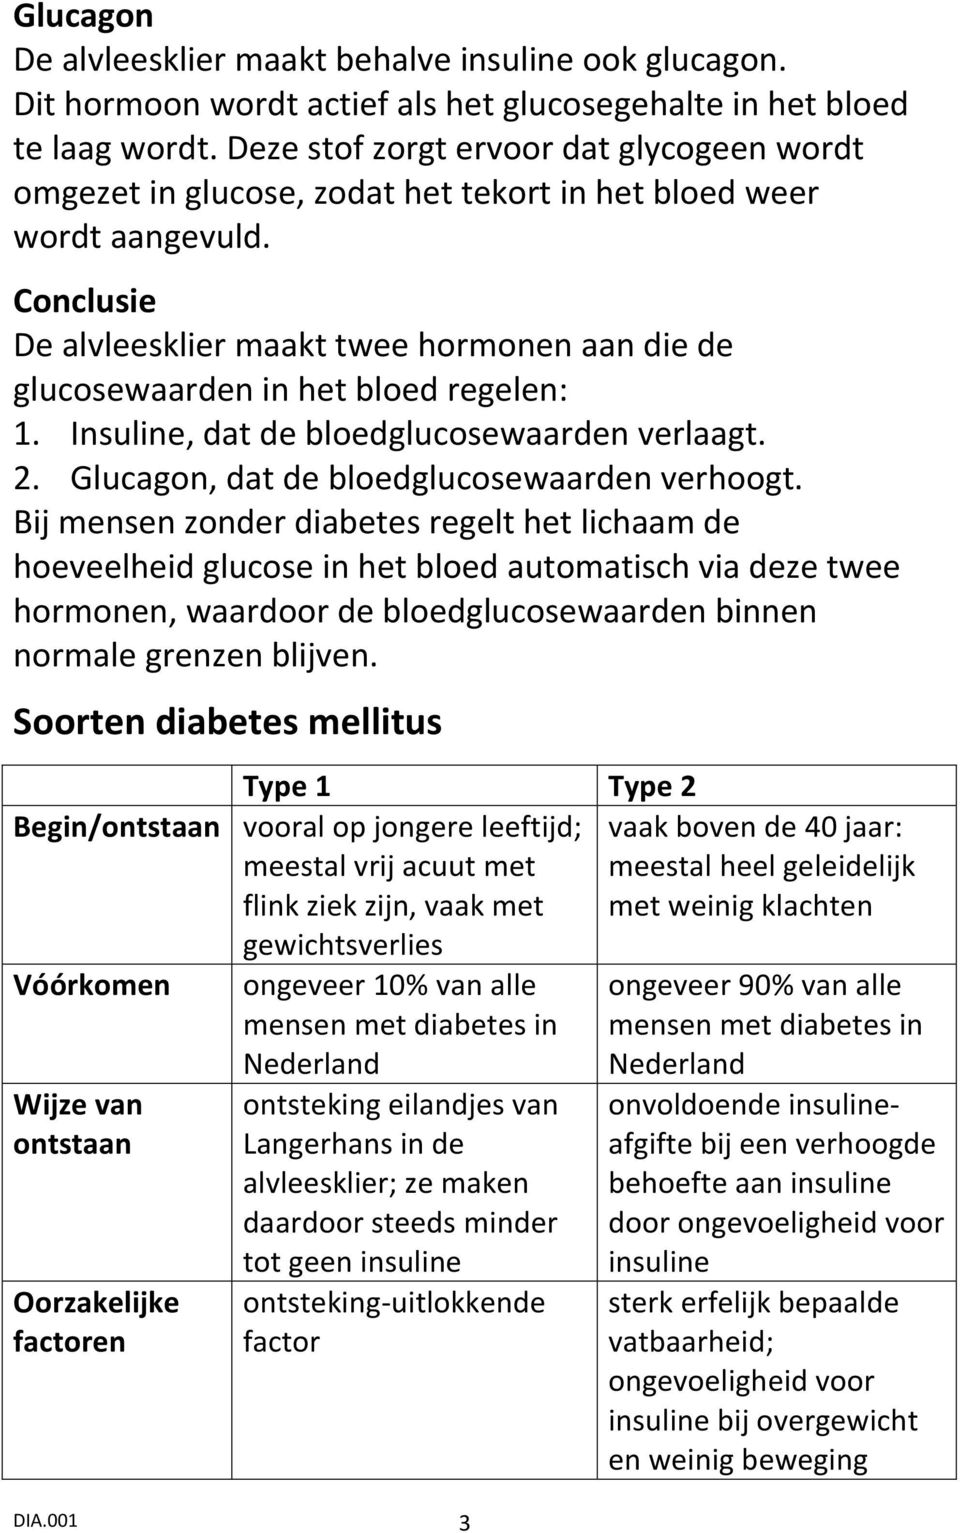 Conclusie De alvleesklier maakt twee hormonen aan die de glucosewaarden in het bloed regelen: 1. Insuline, dat de bloedglucosewaarden verlaagt. 2. Glucagon, dat de bloedglucosewaarden verhoogt.